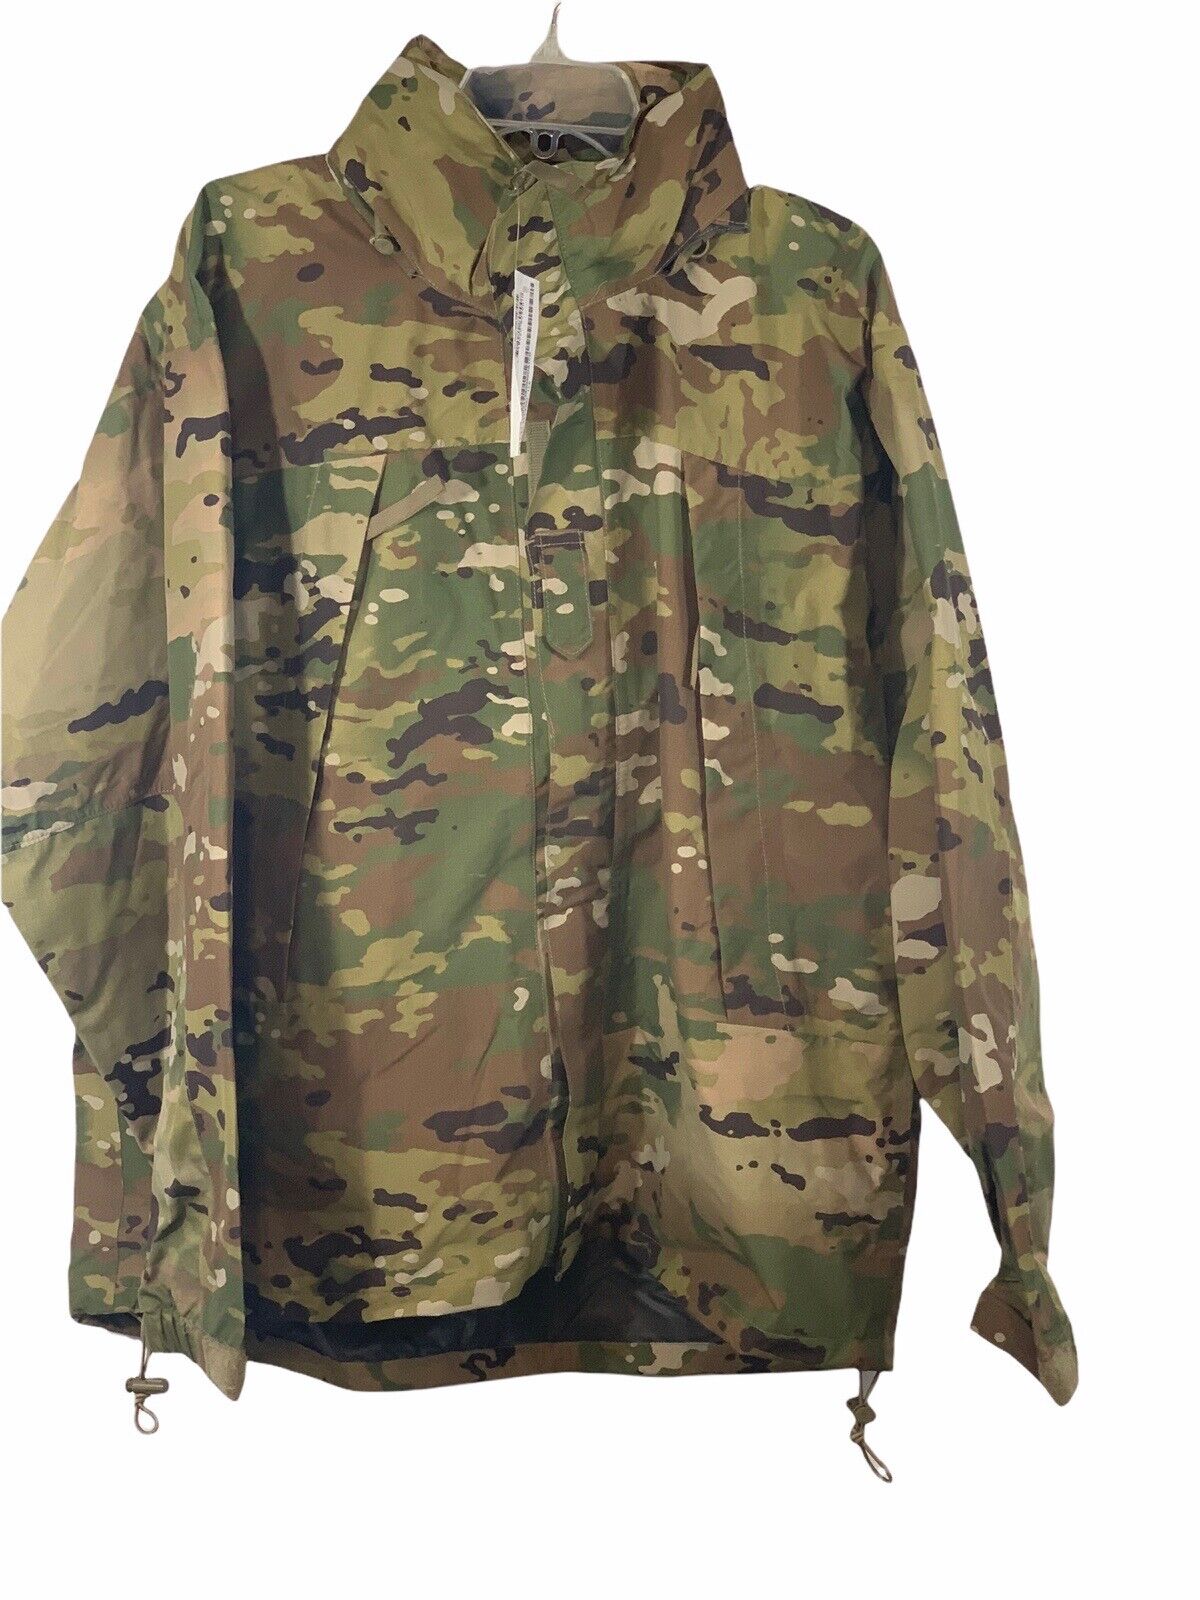 Military OCP Extreme Cold/Wet Weather Generation 3 III Jacket Size Medium